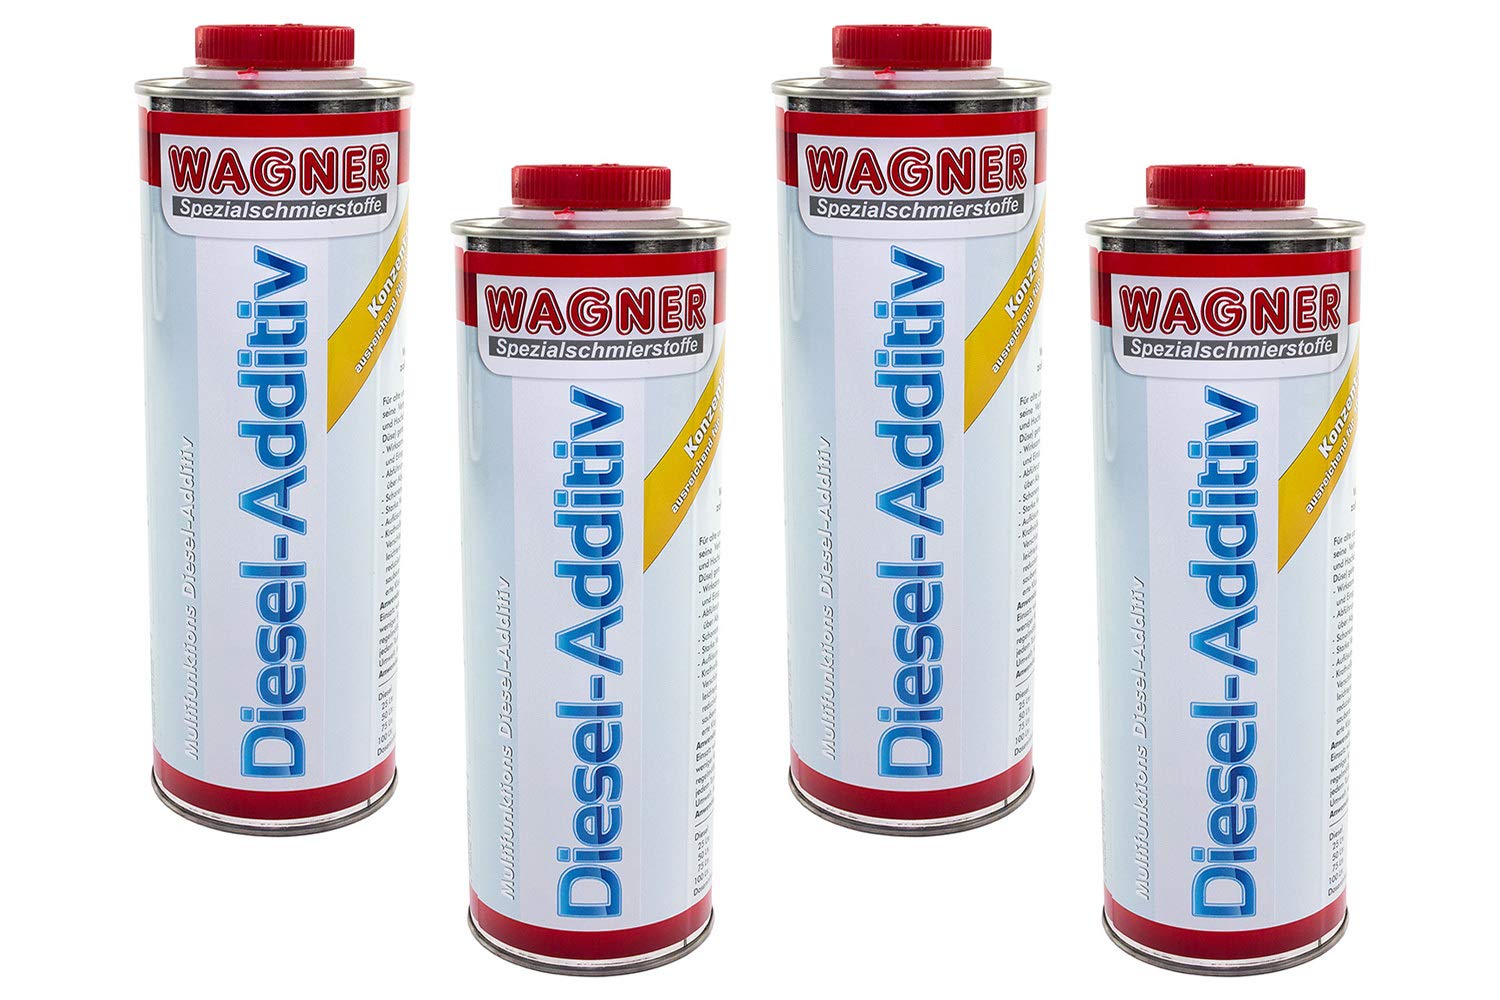 WAGNER Diesel Additiv 4 Liter Dieseladditiv Kraftstoffsystem Reiniger Zusatz von MVH Bockauf